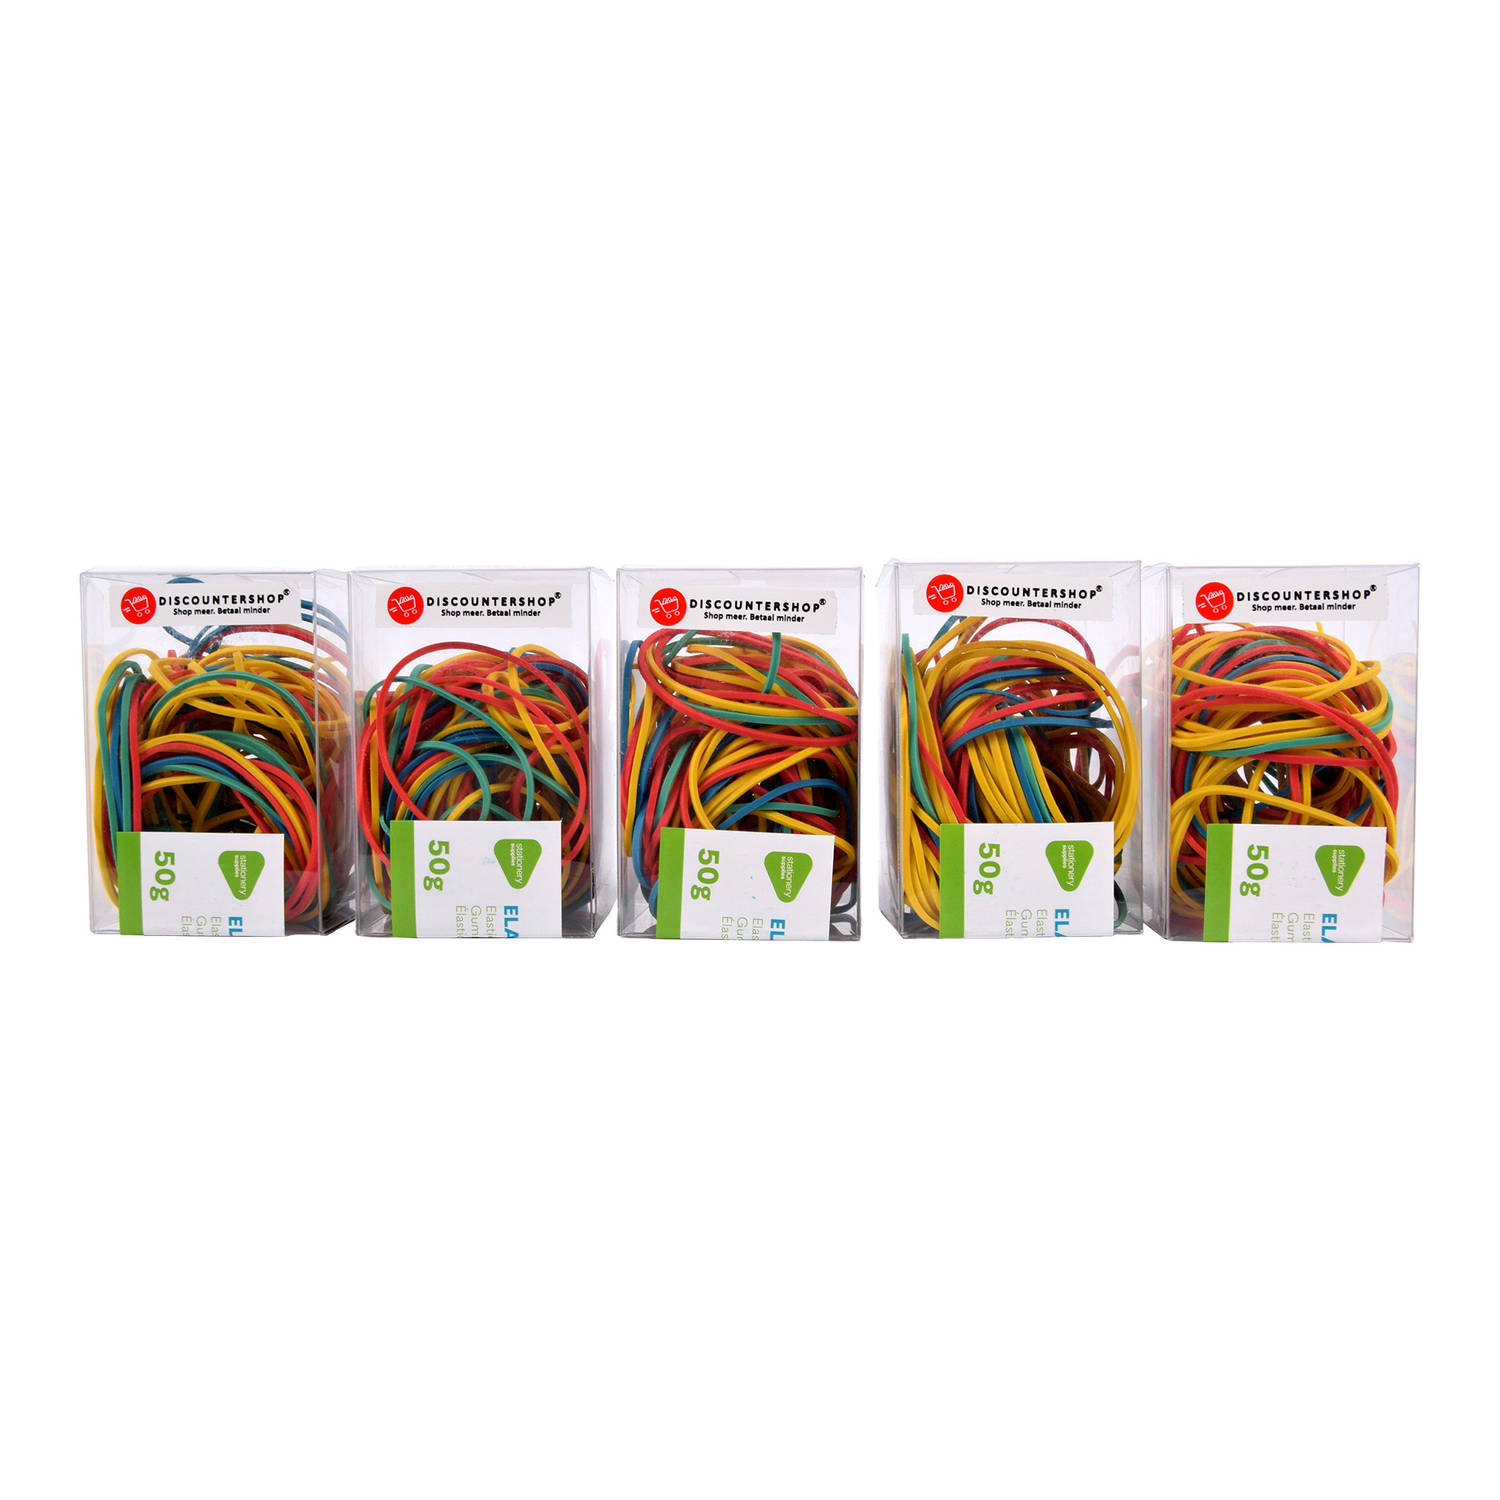 Vrolijk gekleurde elastiekjes van rubber 5 doosjes met elk 50g Speciaal voor kinderen Handige kleine